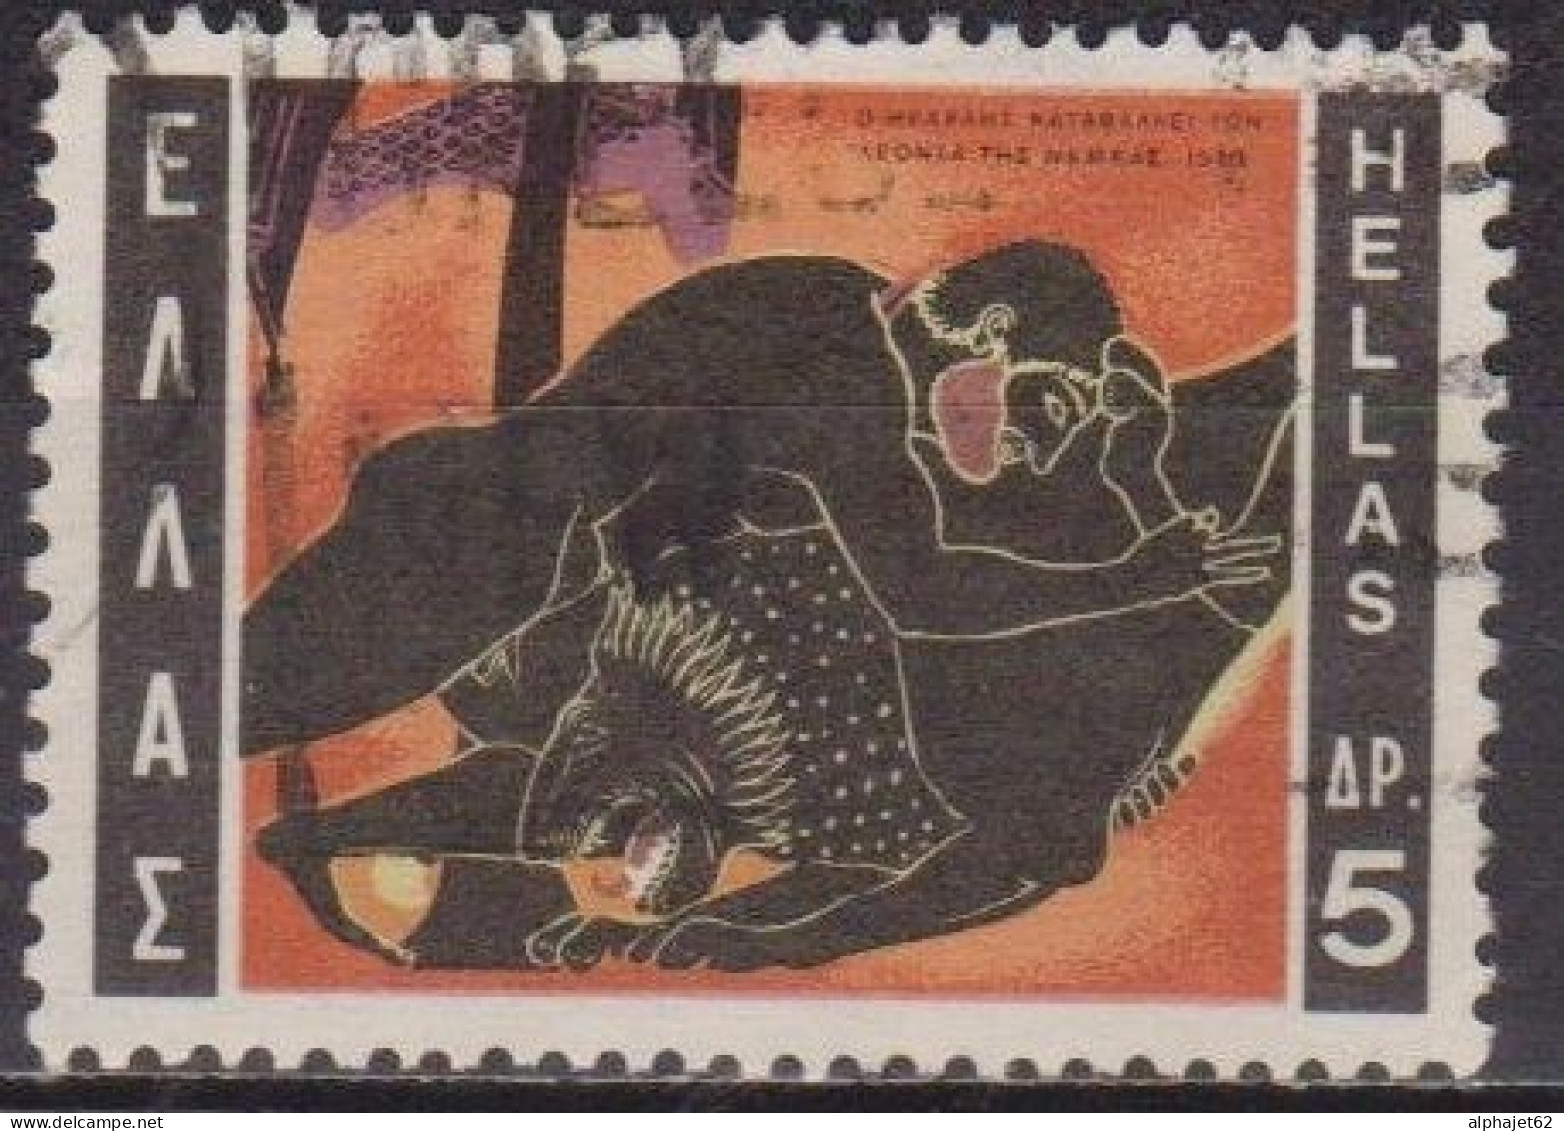 Mythologie - 12 Travaux D'Hercule - GRECE - Le Lion De Némée - N° 1015 - 1970 - Gebraucht